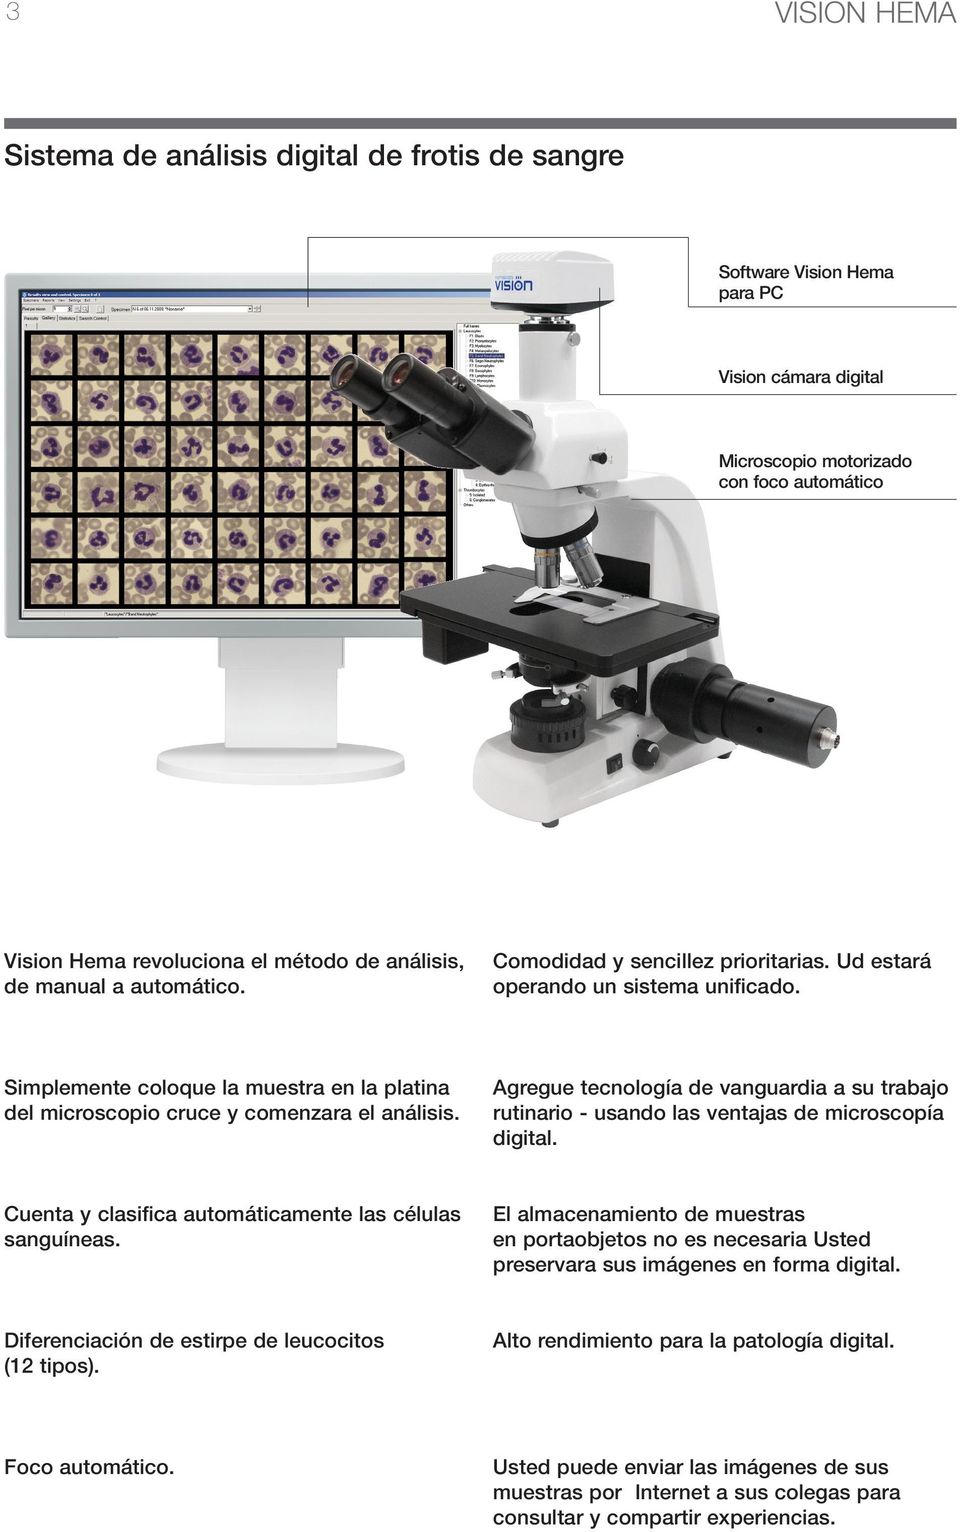 Simplemente coloque la muestra en la platina del microscopio cruce y comenzara el análisis. Agregue tecnología de vanguardia a su trabajo rutinario - usando las ventajas de microscopía digital.